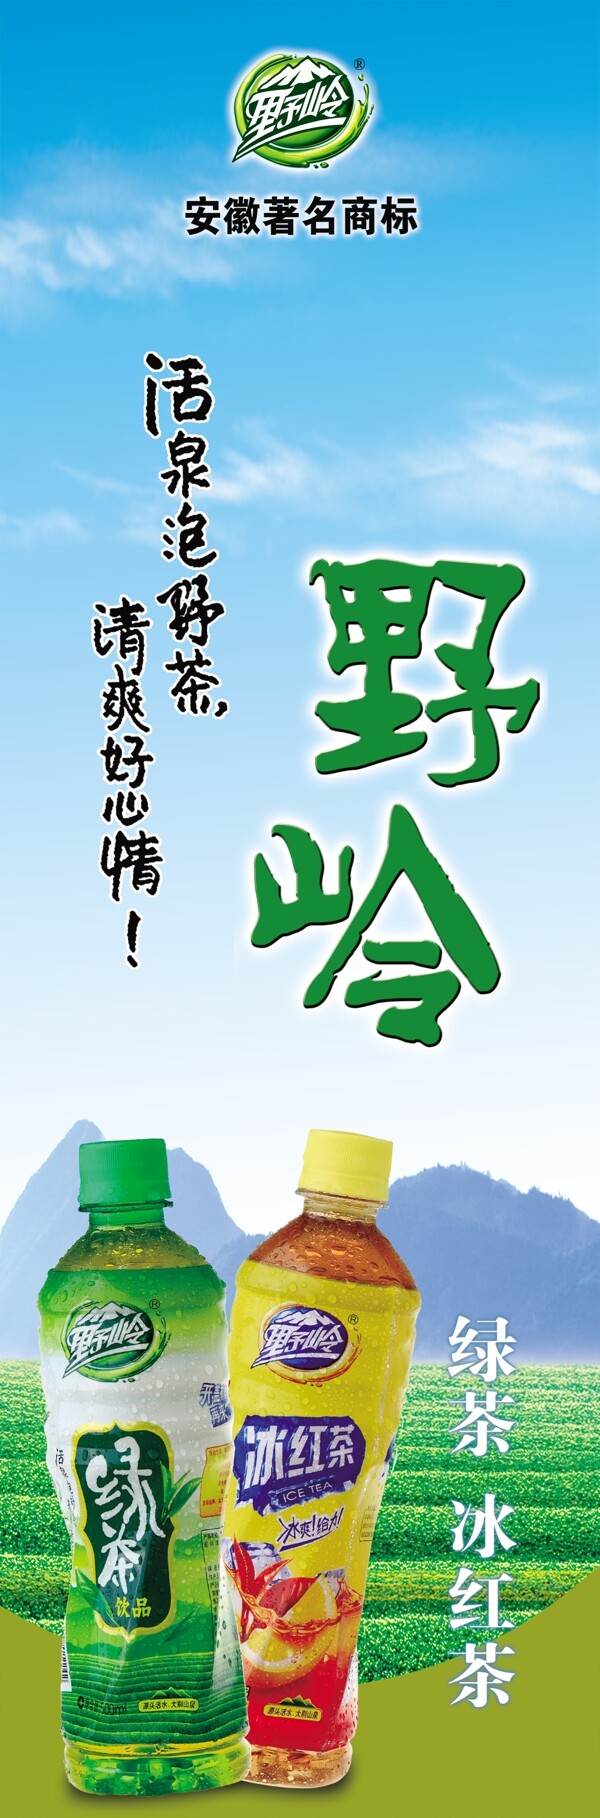 绿茶红茶广告图片